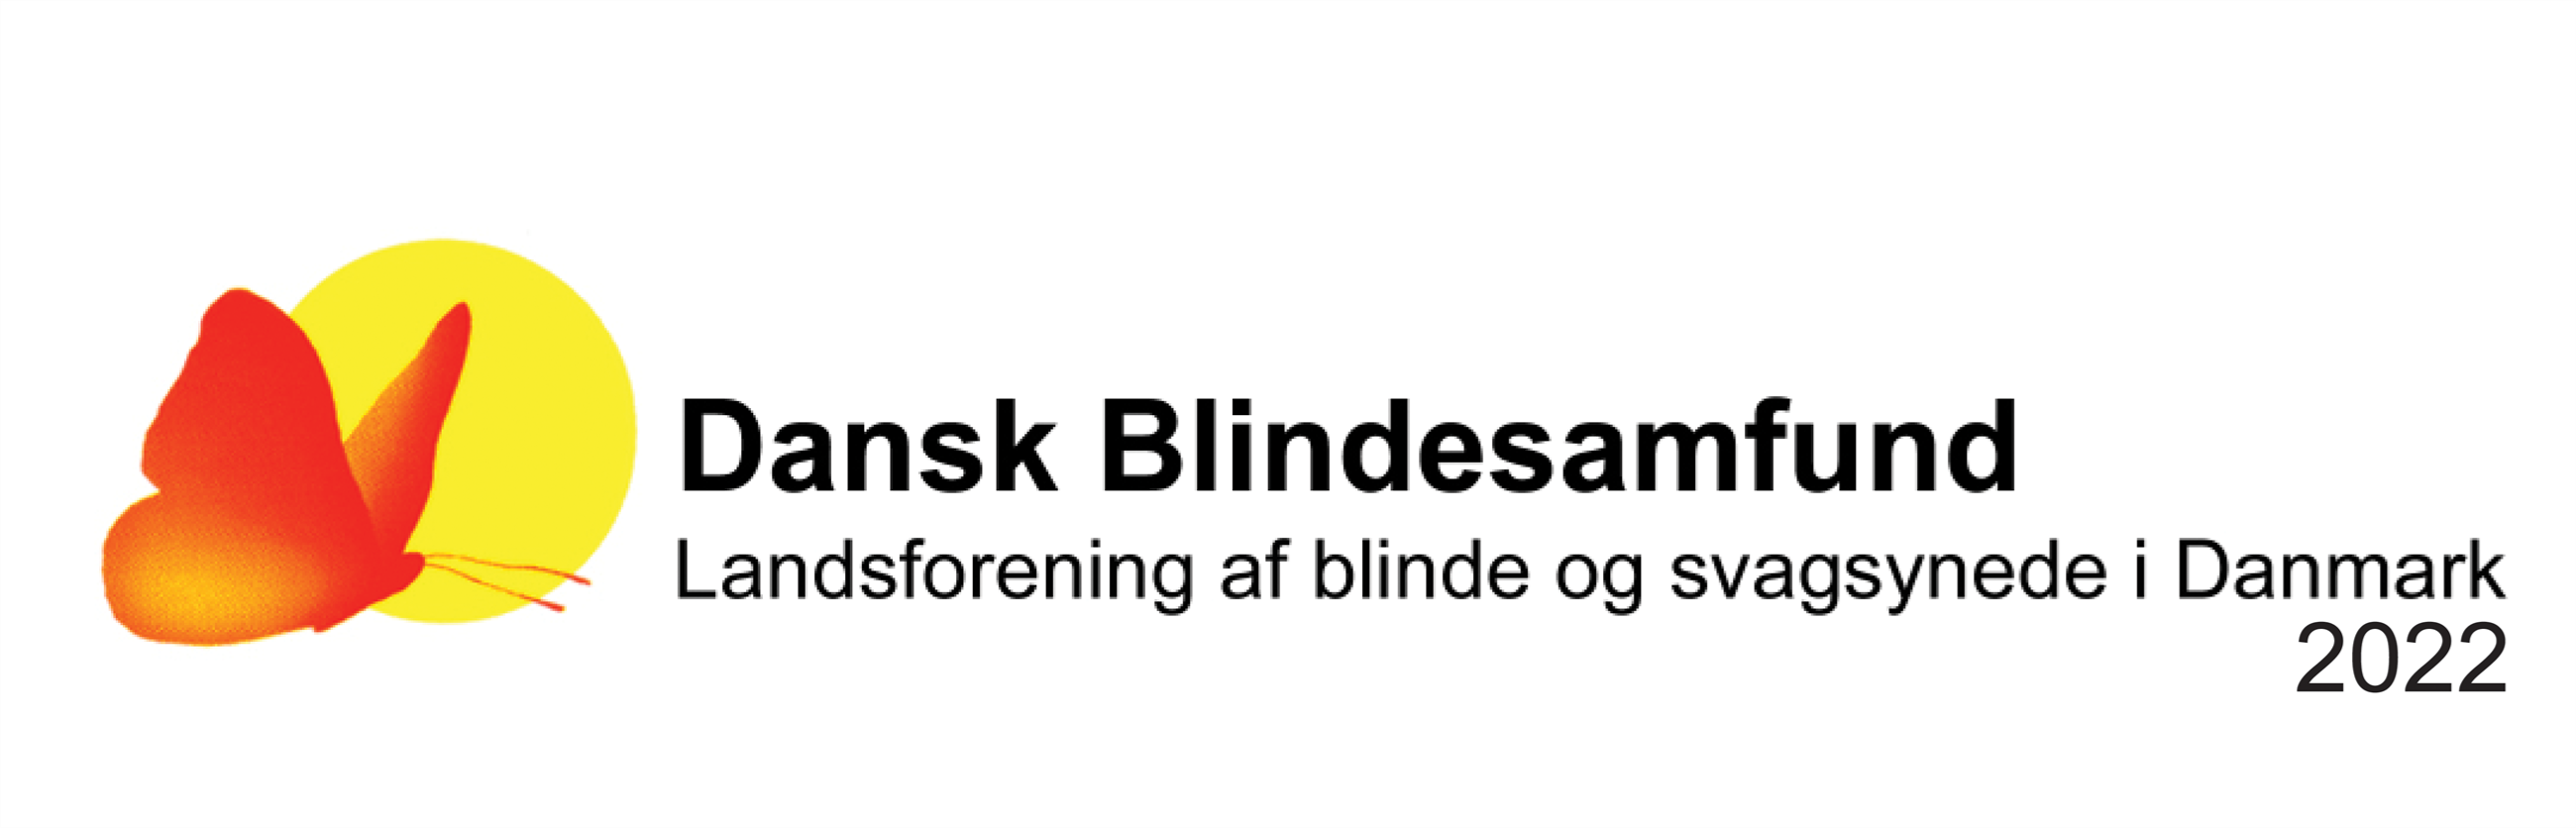 dansk blindesamfund 2022